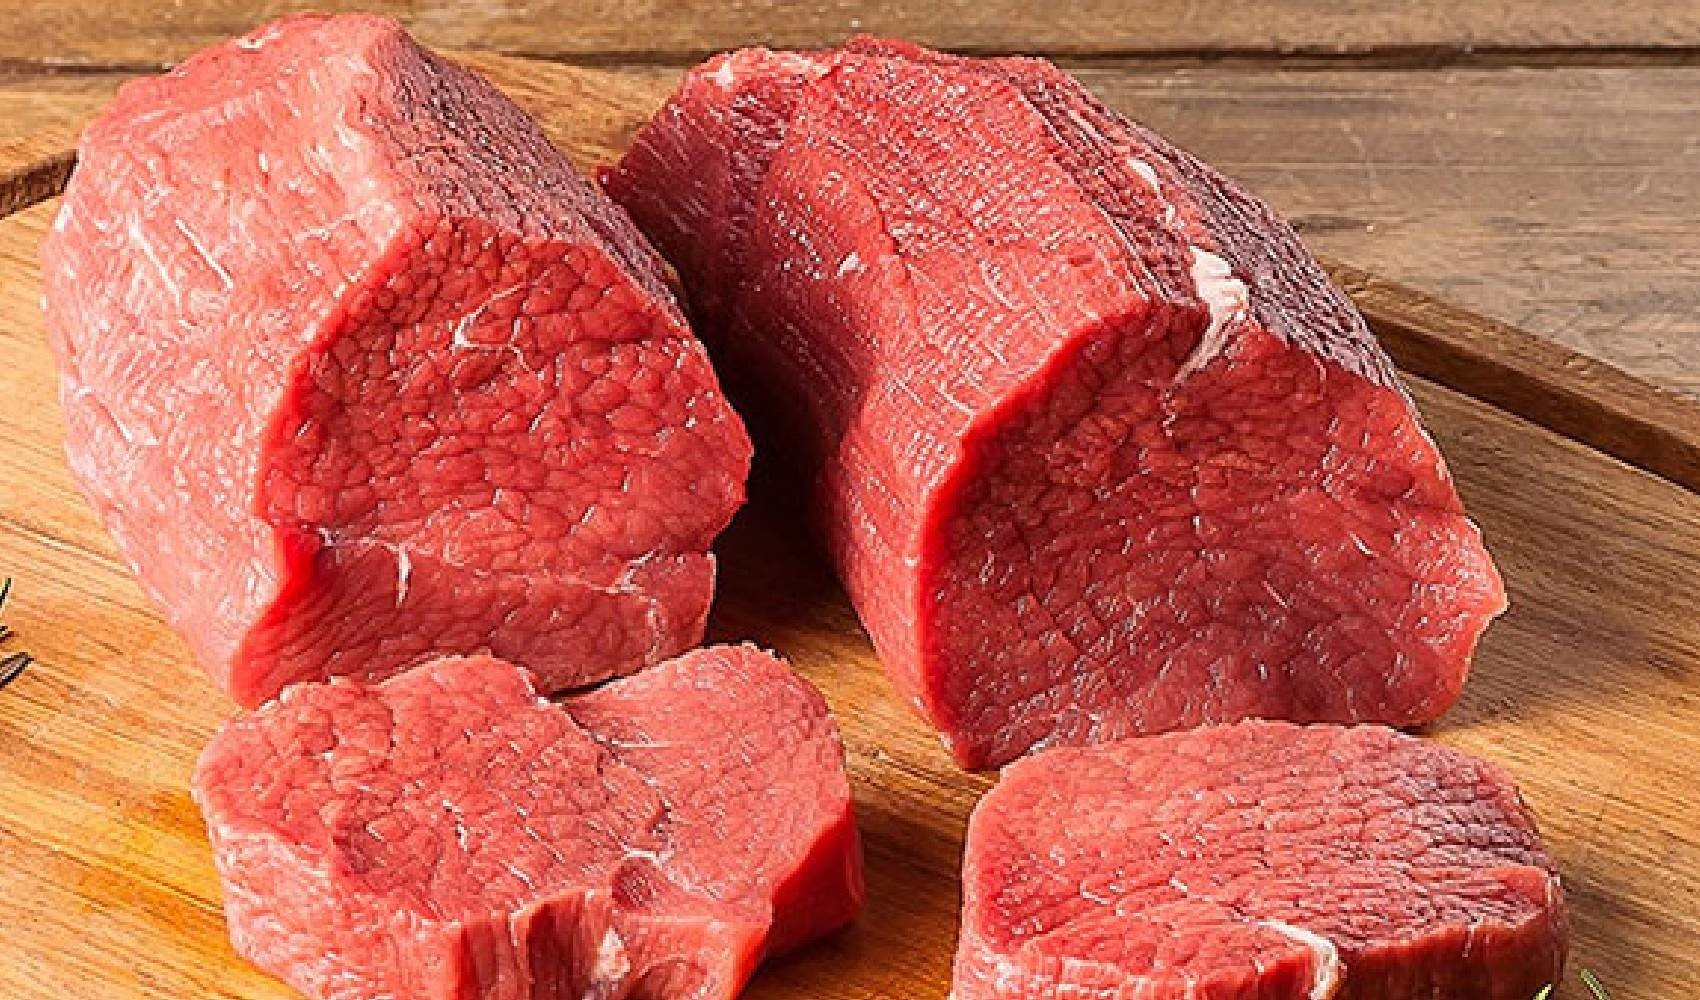 Doç. Dr. Gökhan Alıcı: 'Aşırı kırmızı et tüketimi kalbi yoruyor'